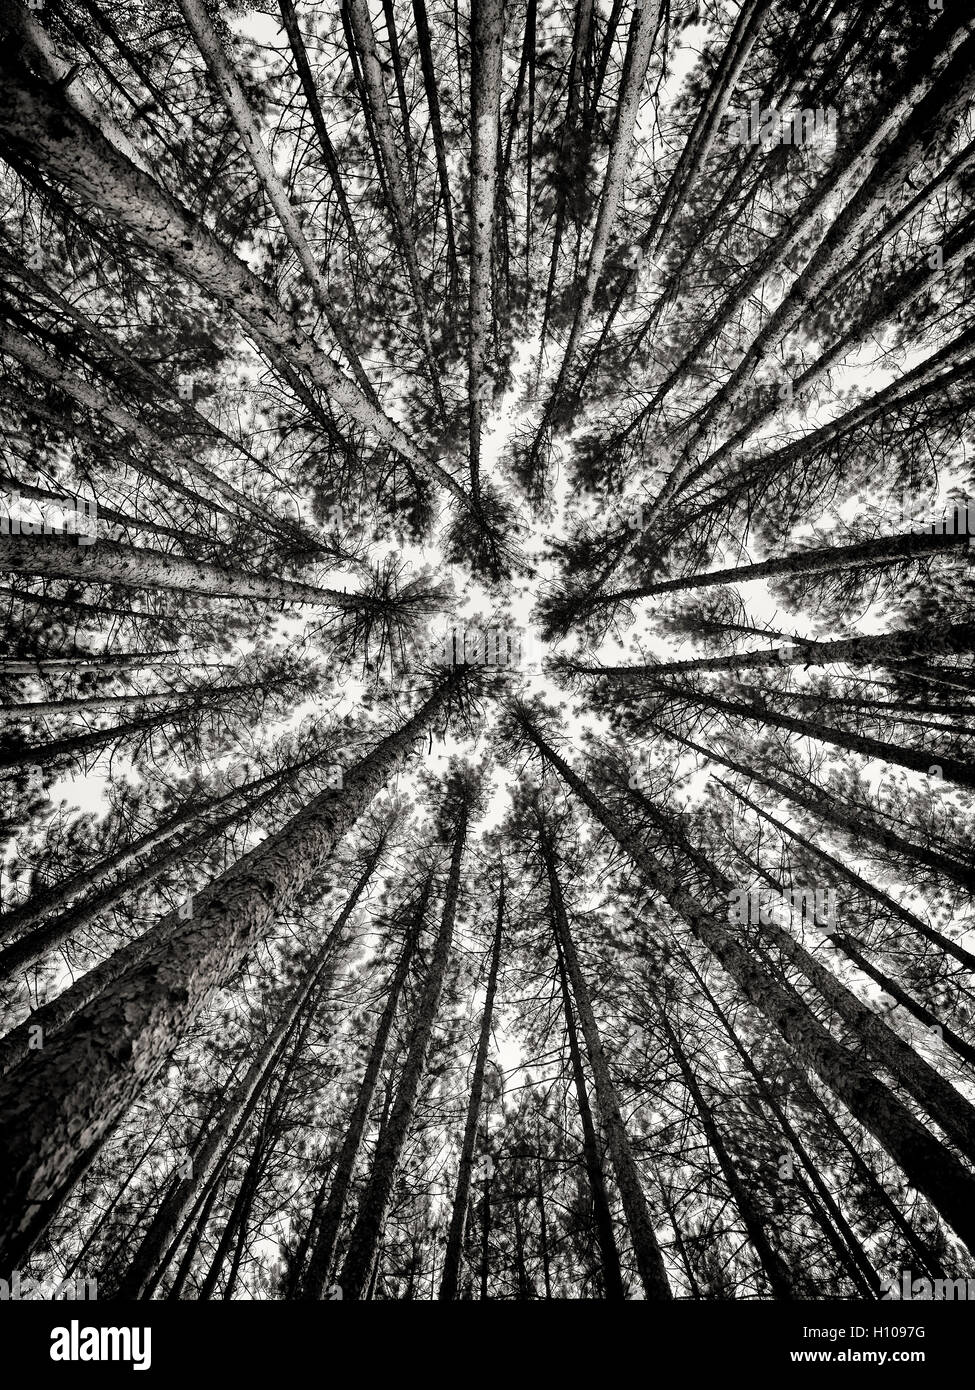 Image abstrait artistique de grand pin forest tree tops plus de ciel bleu, Muskoka, Ontario, Canada, noir et blanc Banque D'Images